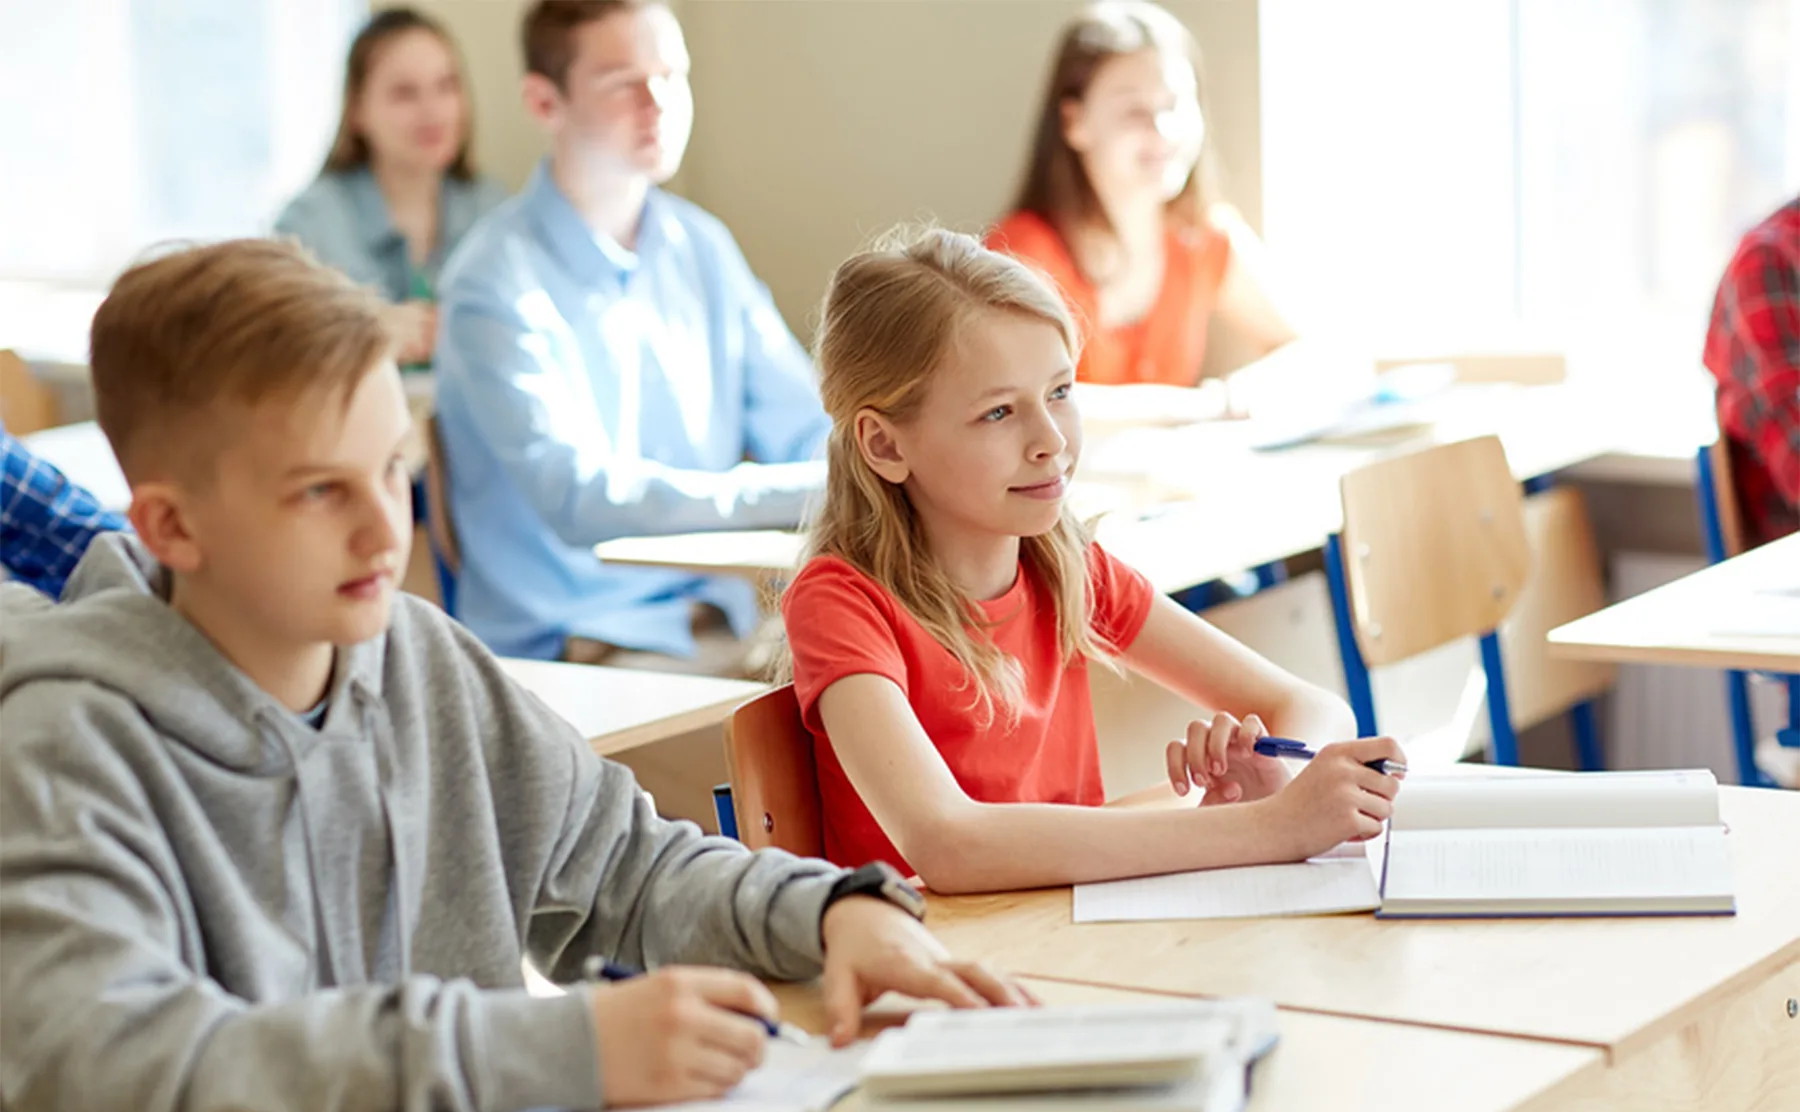 Педагогические классы в московских школах: проект, за которым будущее